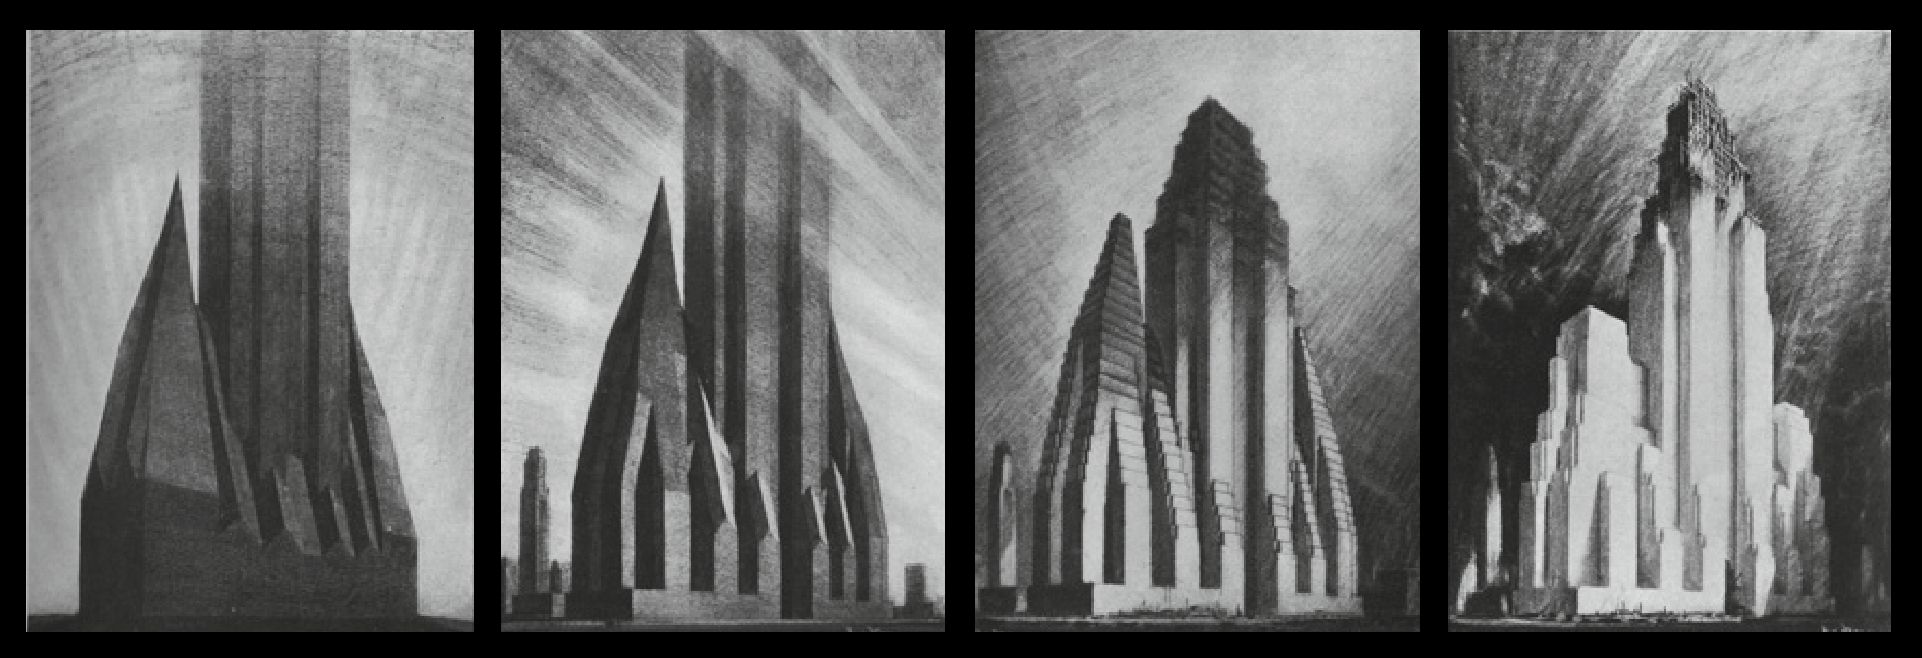 „Evolution of the Set-back Building“ podľa Hugha Ferrissa (zľava doprava) 1: Obálka, ako je definovaná zákonom z roku 1916. Zvolený mestský blok o rozmere 200 x 800 feet (60,96 x 243,84 m). Počet a umiestnenie (ale nie objem) vikierov, takisto tvar a pozícia (ale nie pôdorysná plocha) veže, sú volené dizajnérom/architektom. V prípade tohto obrázku je jednoducho znázornená maximálna objemová hmota objektu vyplývajúca z právnych špecifikácií Zónového zákona. 2: Akceptovanie hmoty a jej transformovanie – architekt modifikuje vzhľad masy hlavne tak, aby prepúšťala denné svetlo. 3: Modifikovaná obálka na priamočiare/ortogonálne formy; vzhľad po nahradení šikmých rovín ortogonálnymi, ktoré budú poskytovať tradičnejšie vnútorné priestory, setbacks – odskoky sa vyskytujú na každom druhom poschodí; pokus o obmedzenie možnej „nekonečnej“ výšky veže. 4: Hmota upravená podľa možností oceľovej konštrukcie; vzhľad potom, čo boli v súlade s možnosťami oceľovej konštrukcie upravené setbacks – odskoky a orezané vrcholy na najvyšších podlažiach, ktoré už obsahujú účelný priestor. Hmota je teraz pripravená pre architektonickú artikuláciu.